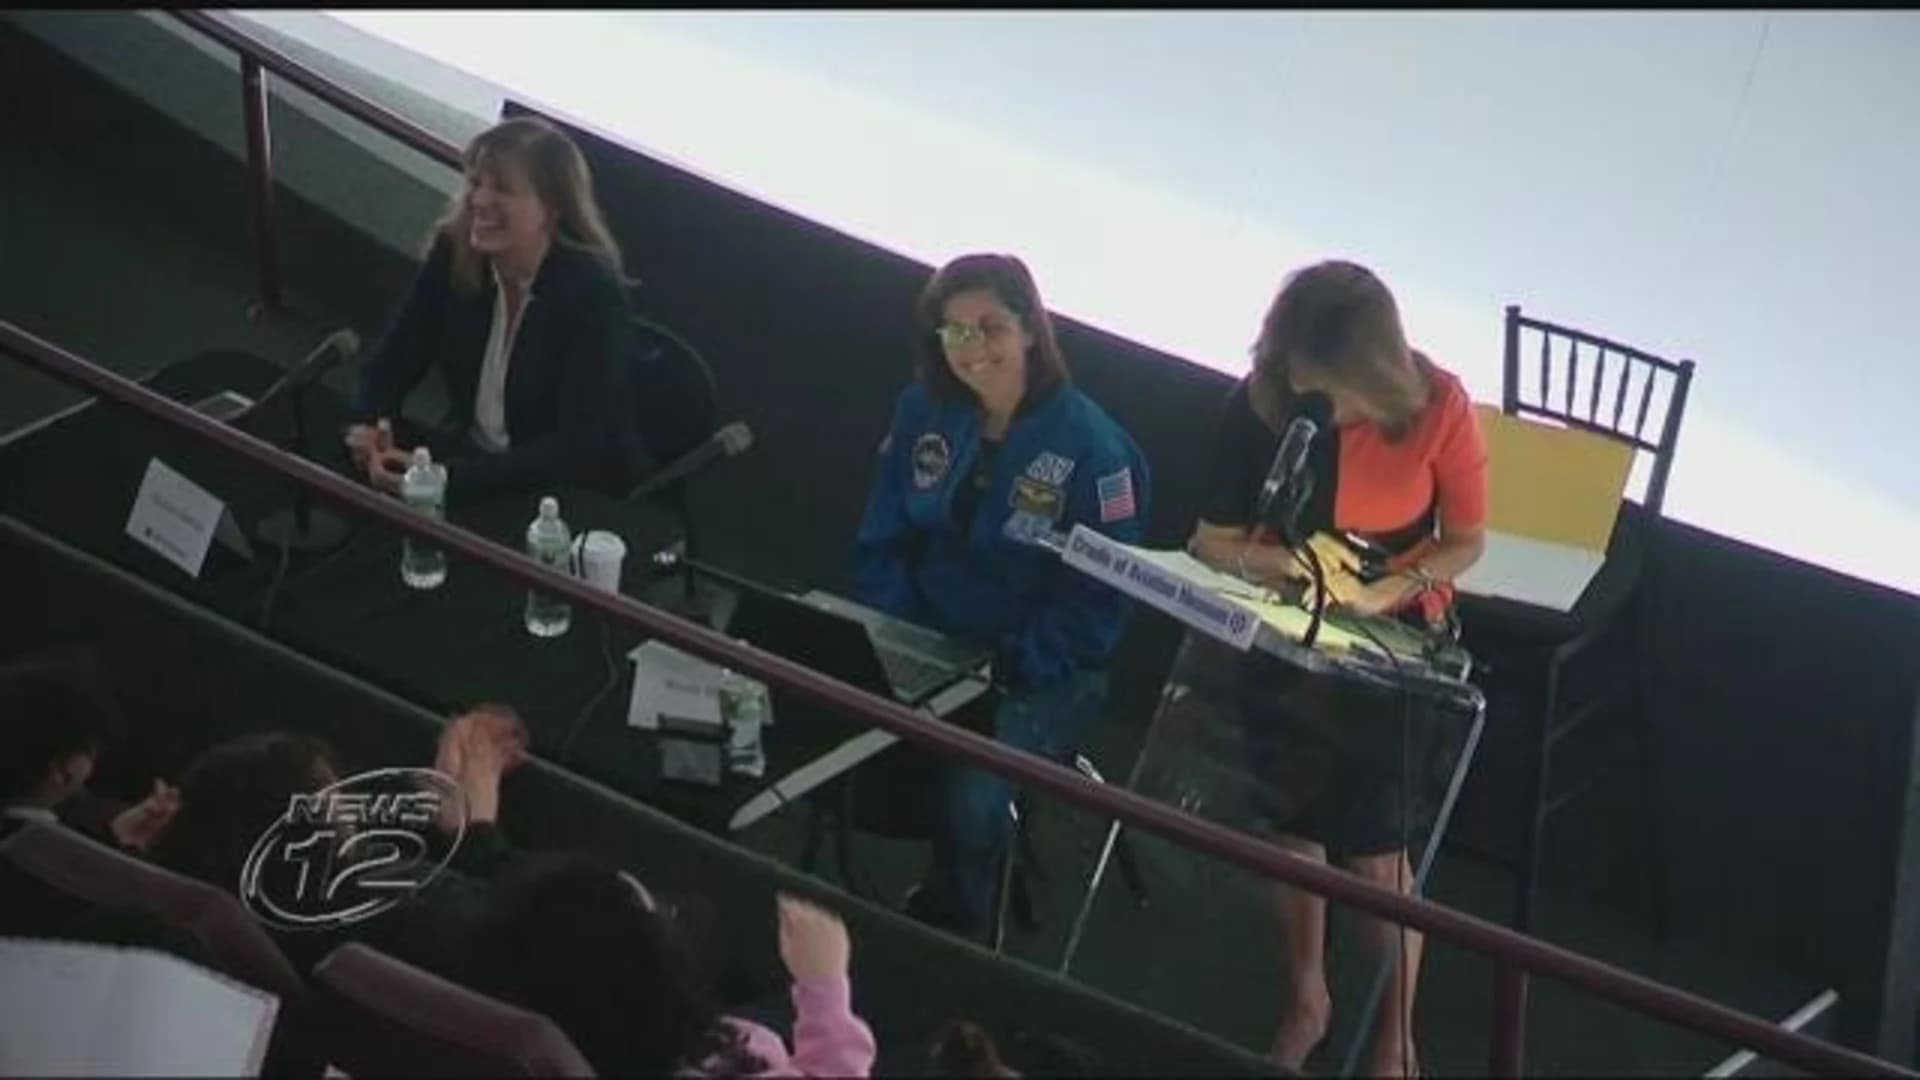 Astronaut speaks at panel focusing on women in STEM fields